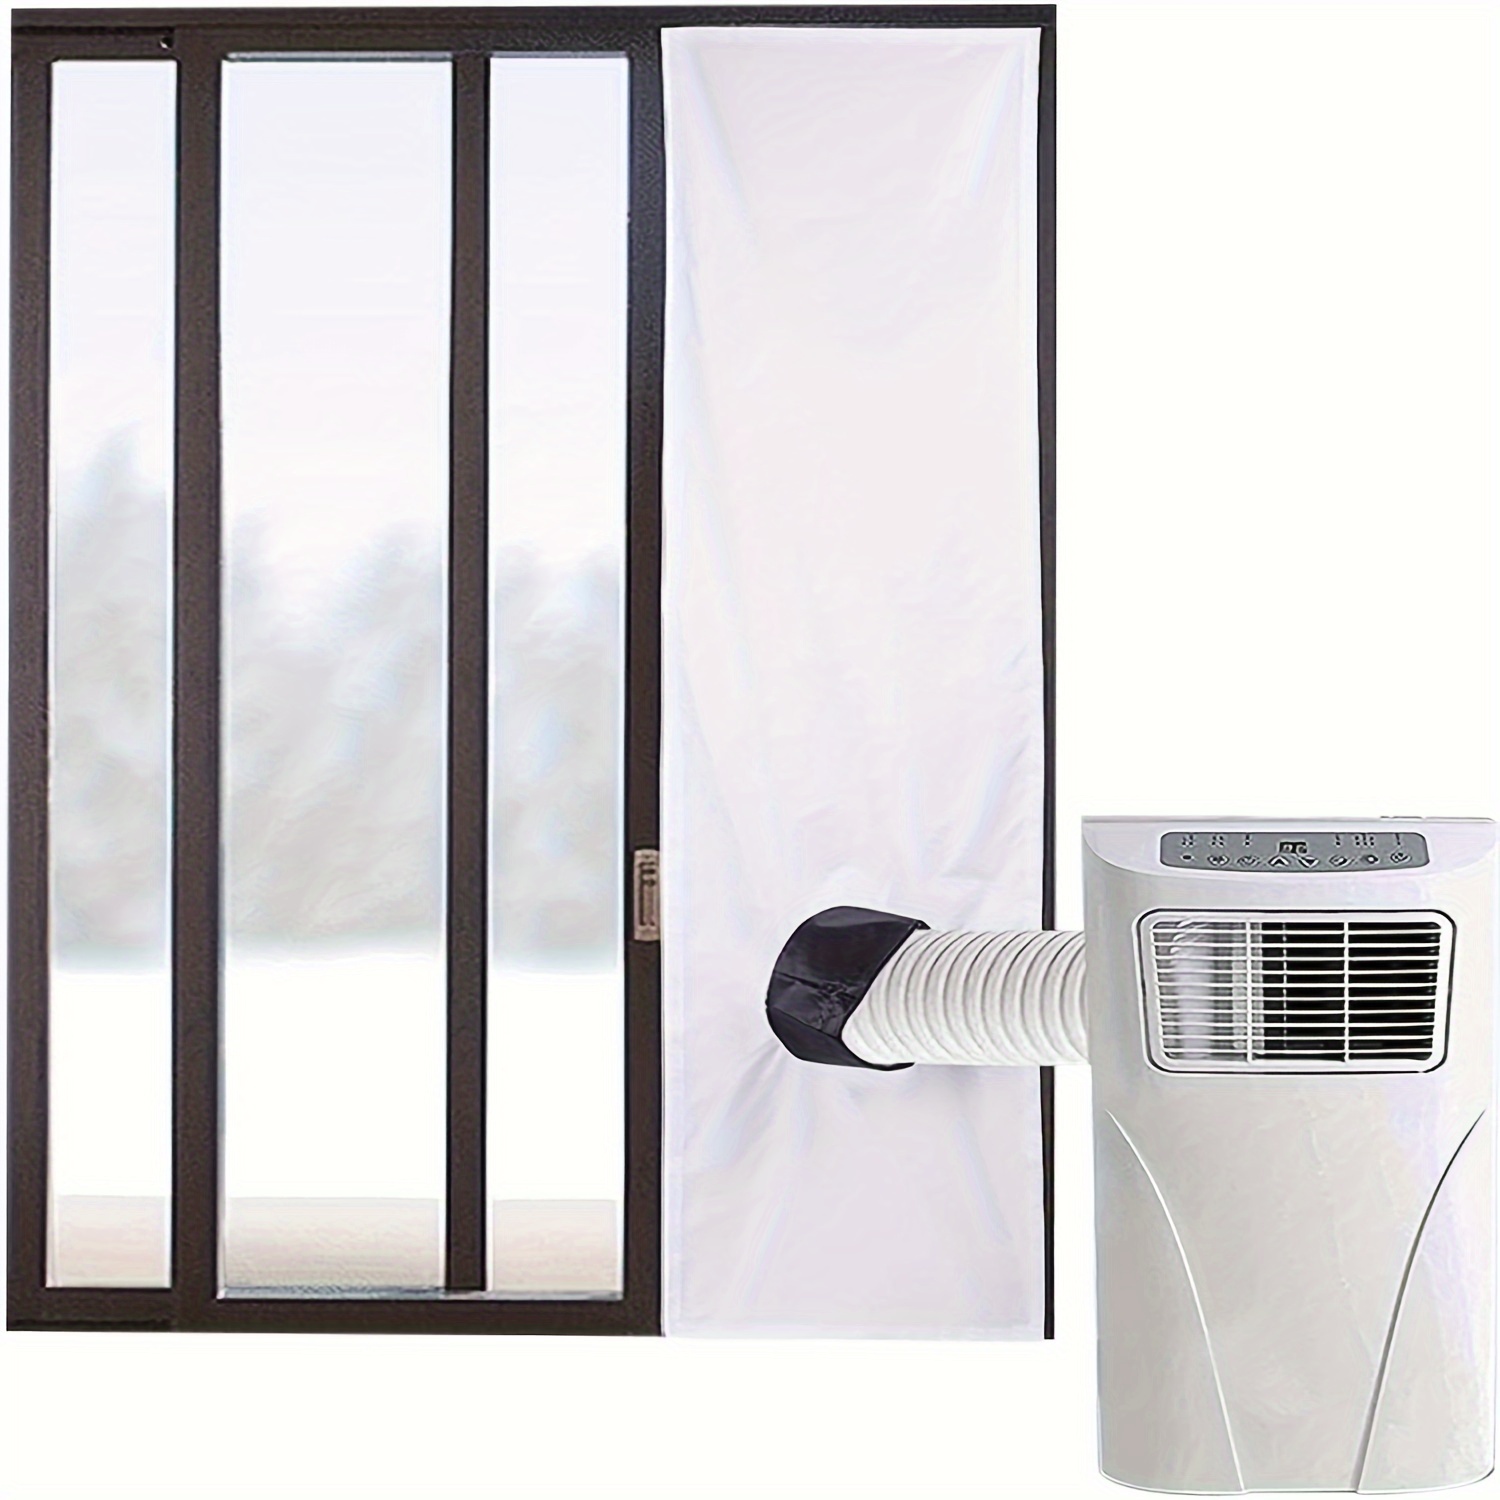 

Easy-install 78" Window Kit - Adjustable Sliding Panel For Enhanced Ventilation & Seal, White